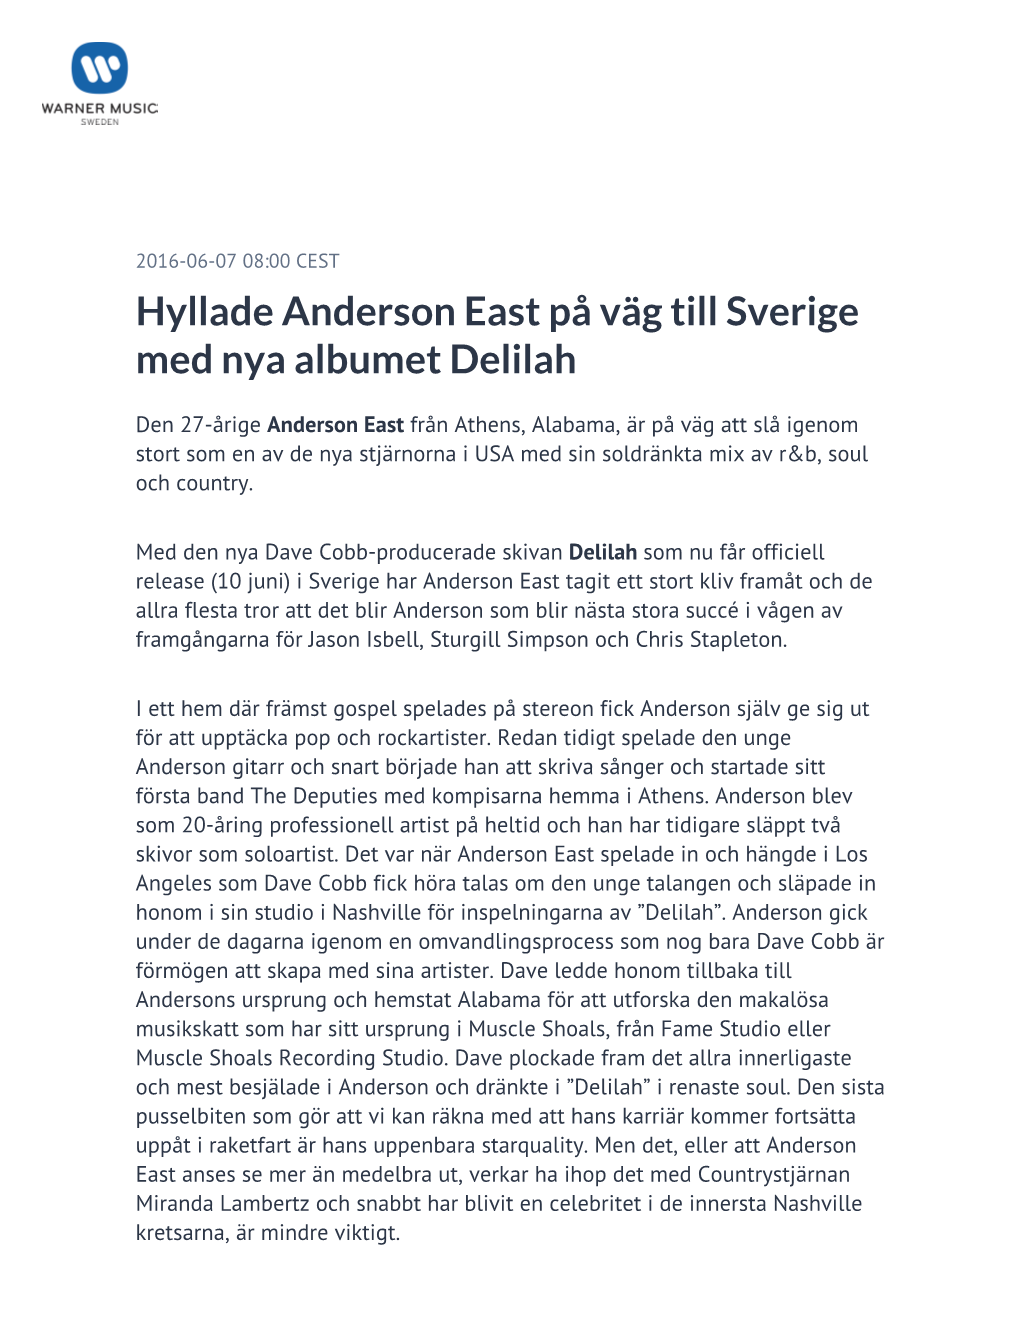 Hyllade Anderson East På Väg Till Sverige Med Nya Albumet Delilah